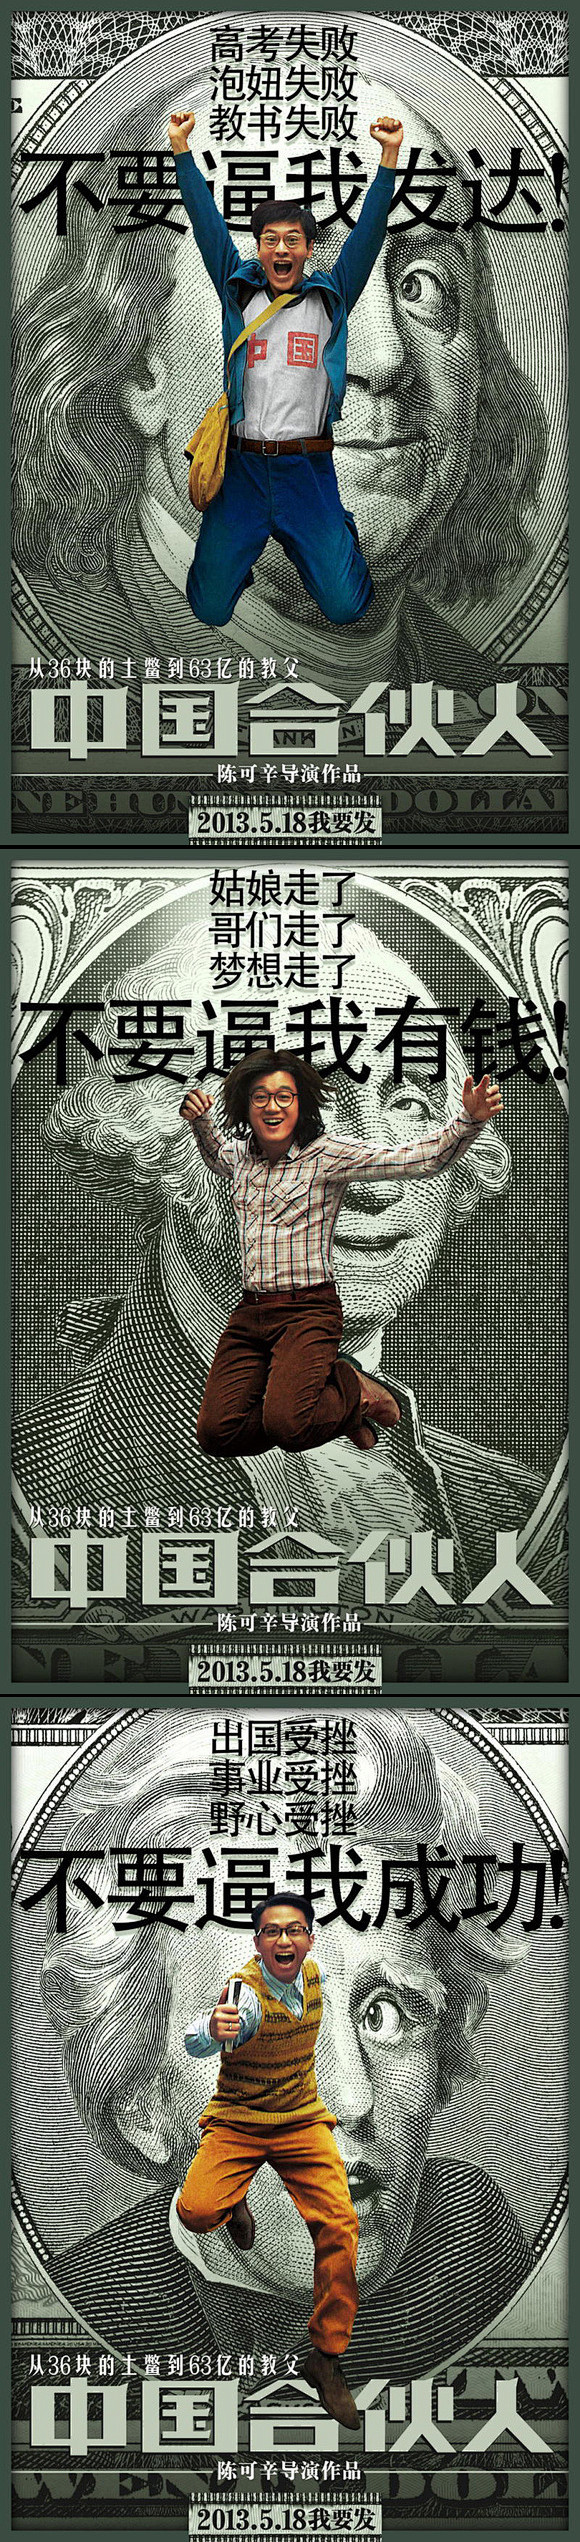 《中国合伙人》电影海报设计 http:/...